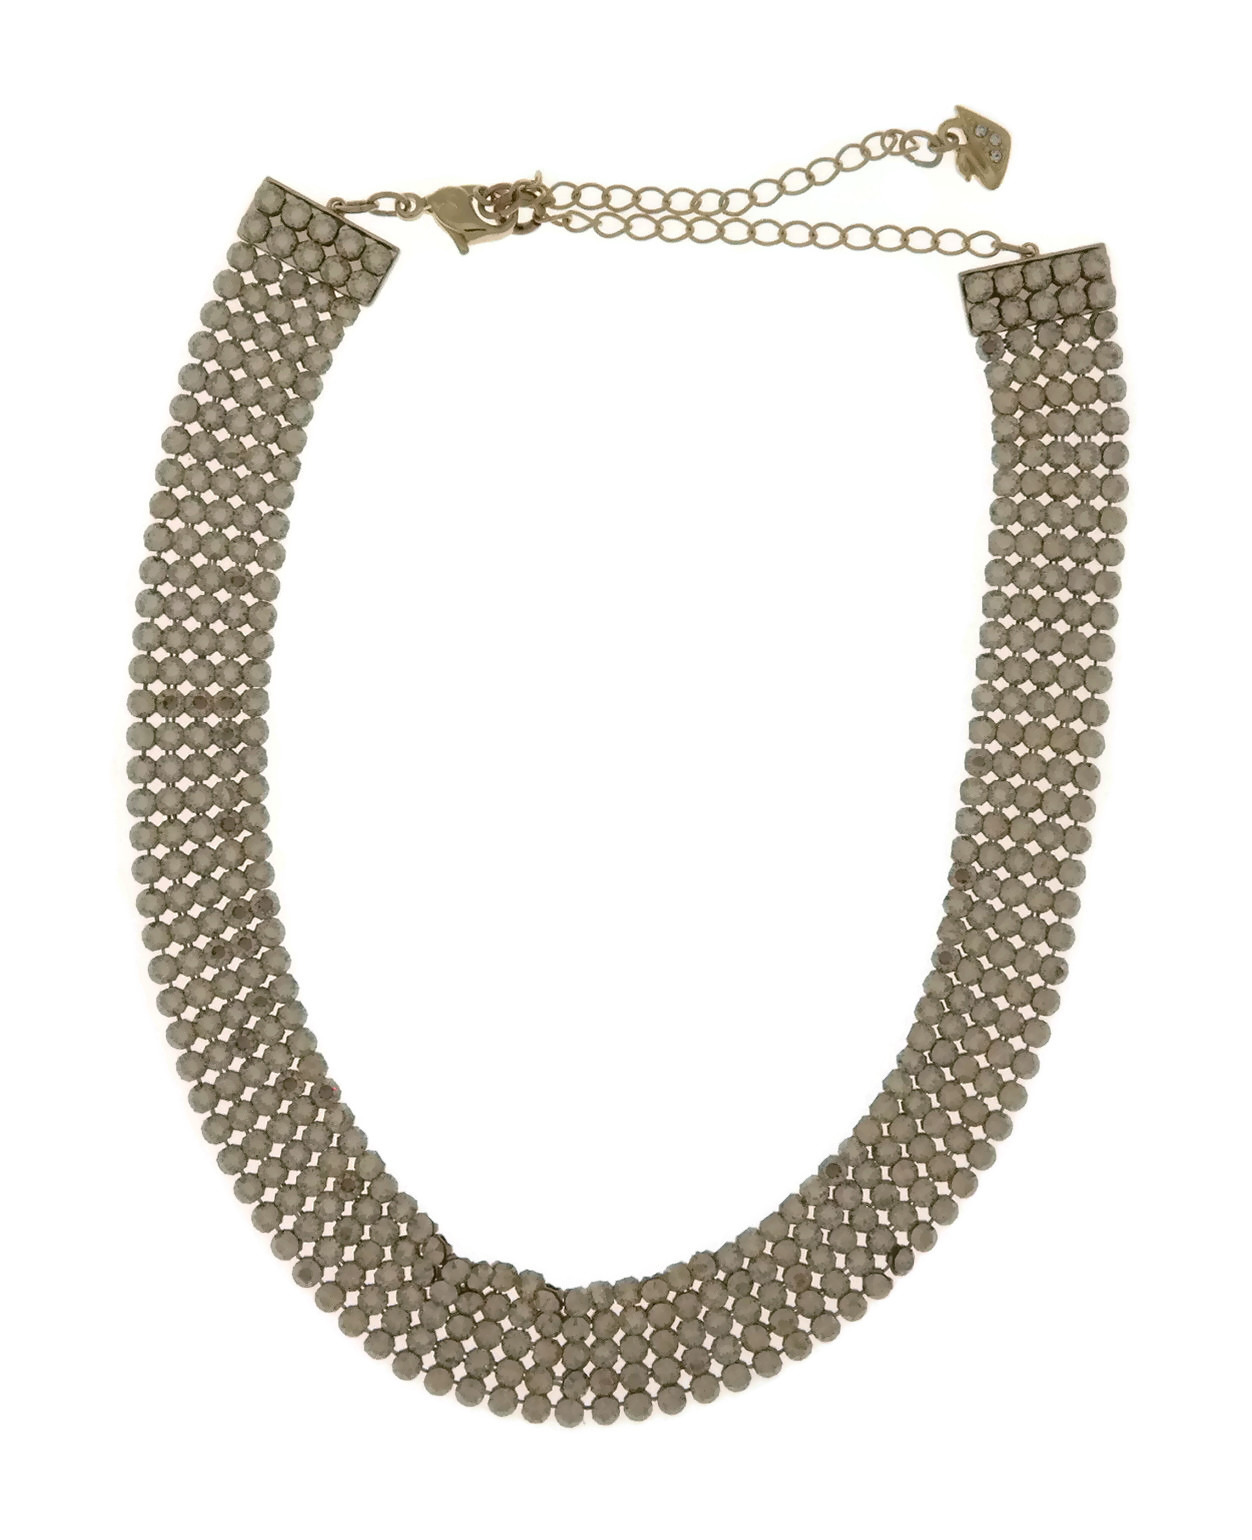 Swarovski Gold Plated Fit Choker Necklace, 5364809 768549412417 | eBay